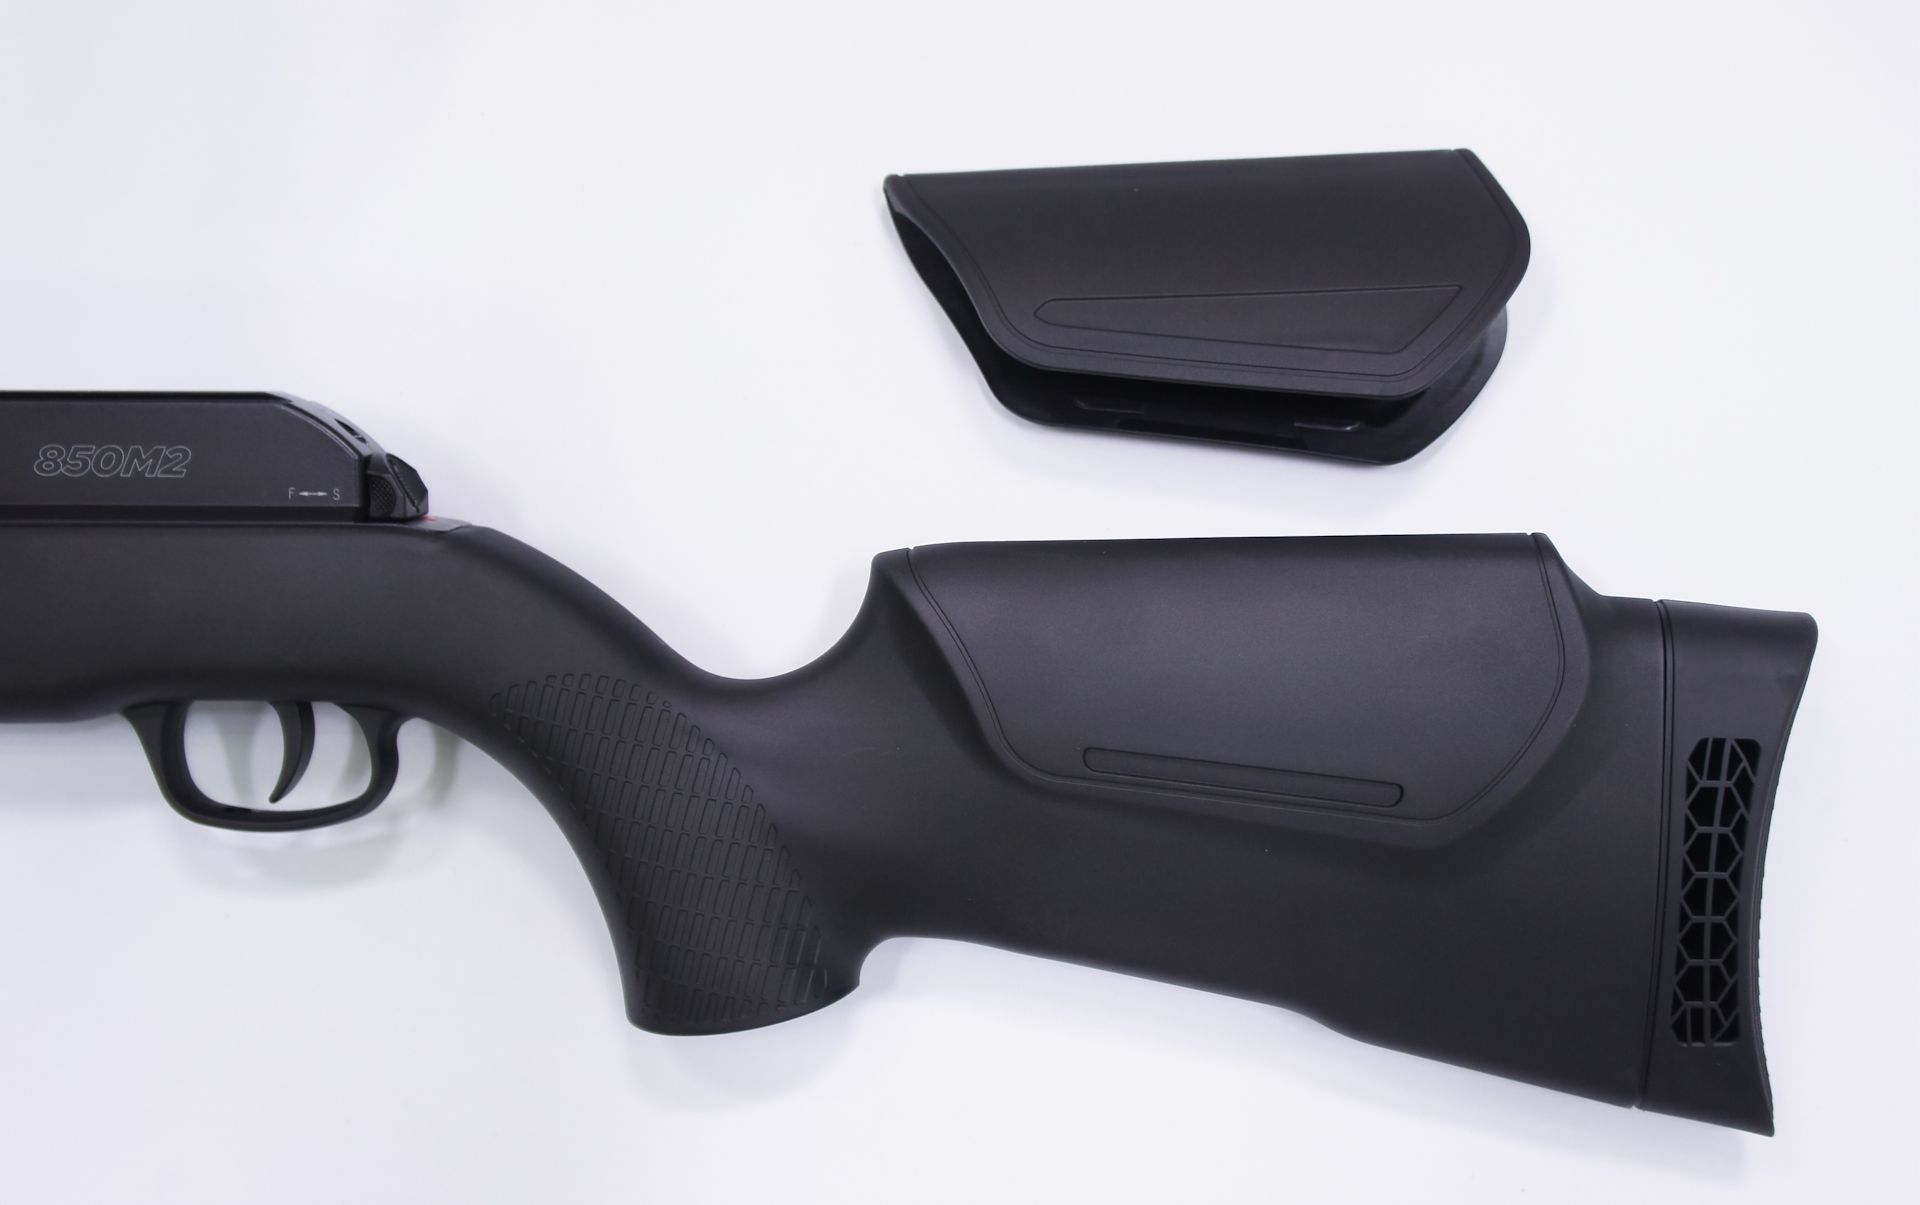 CO2-Luftgewehr Umarex 850 M2 hat im Lieferumfang eine aufsehtzbare Schaftbackenerhöhung für die Schießen mit Optik.